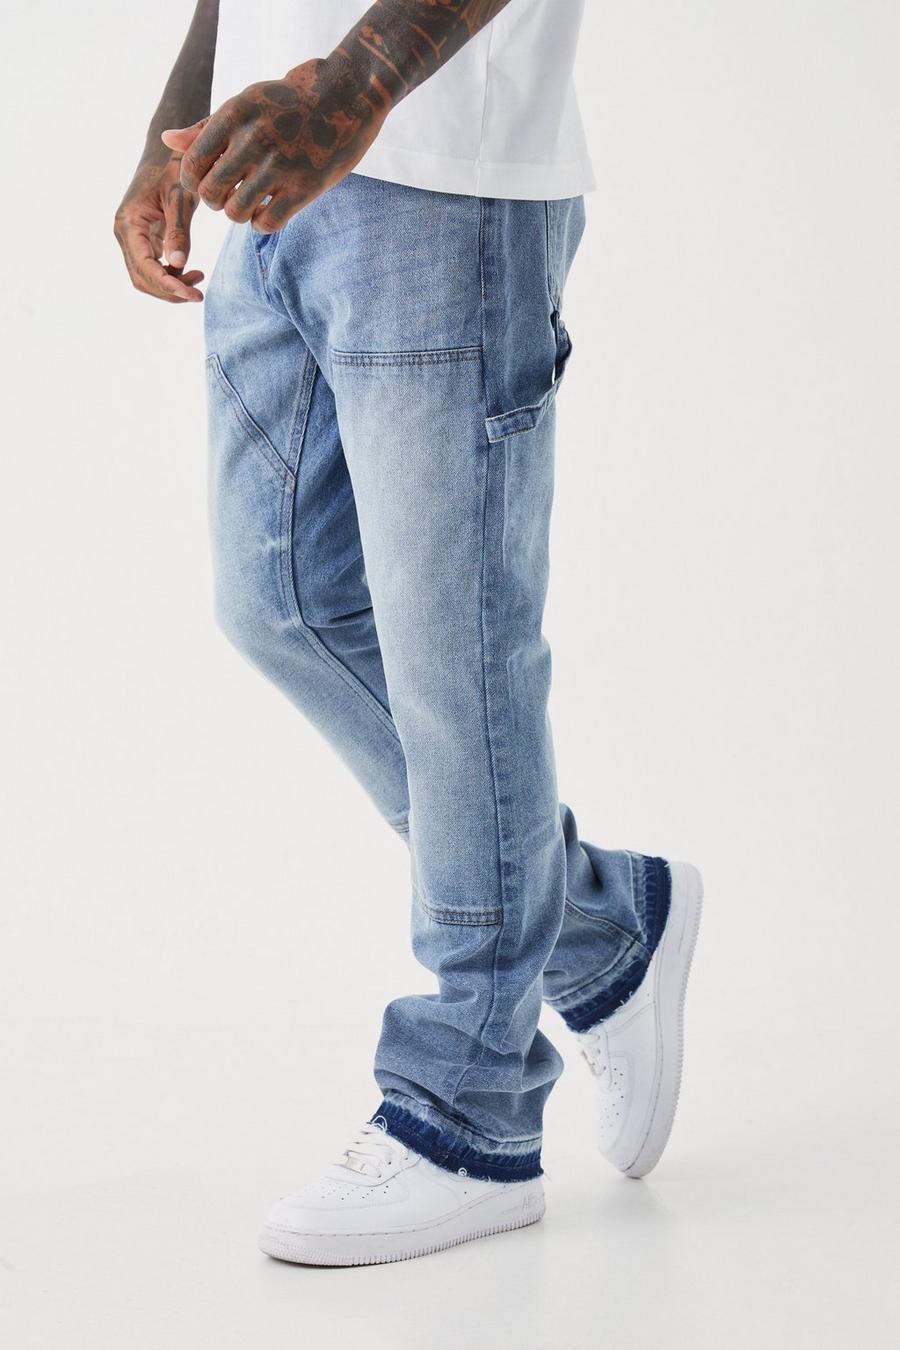 Jeans a zampa Slim Fit in denim rigido stile Carpenter, Antique blue